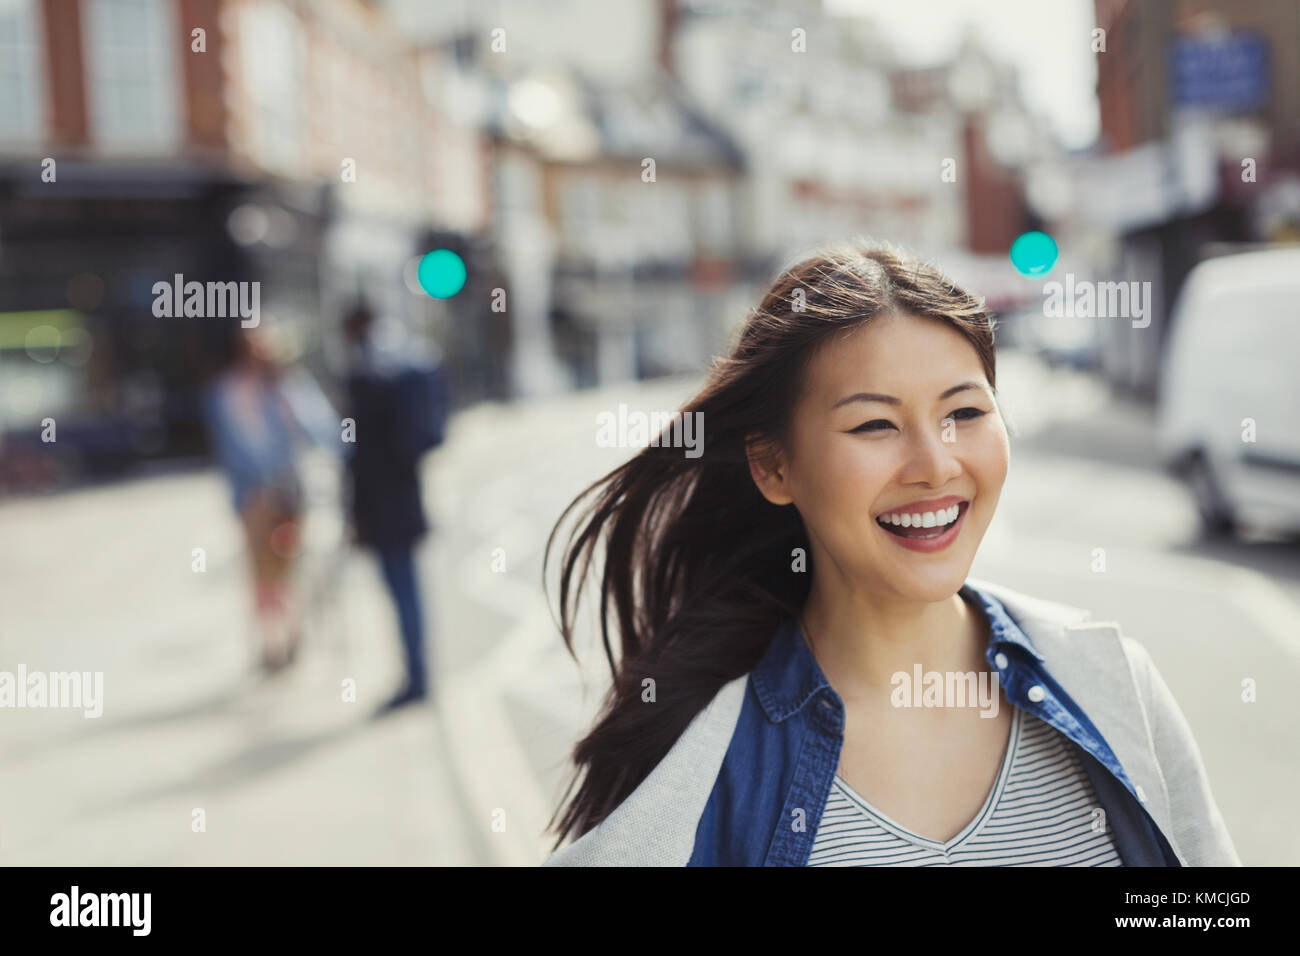 Lächelnde, enthusiastische junge Frau, die auf der sonnigen Stadtstraße läuft Stockfoto